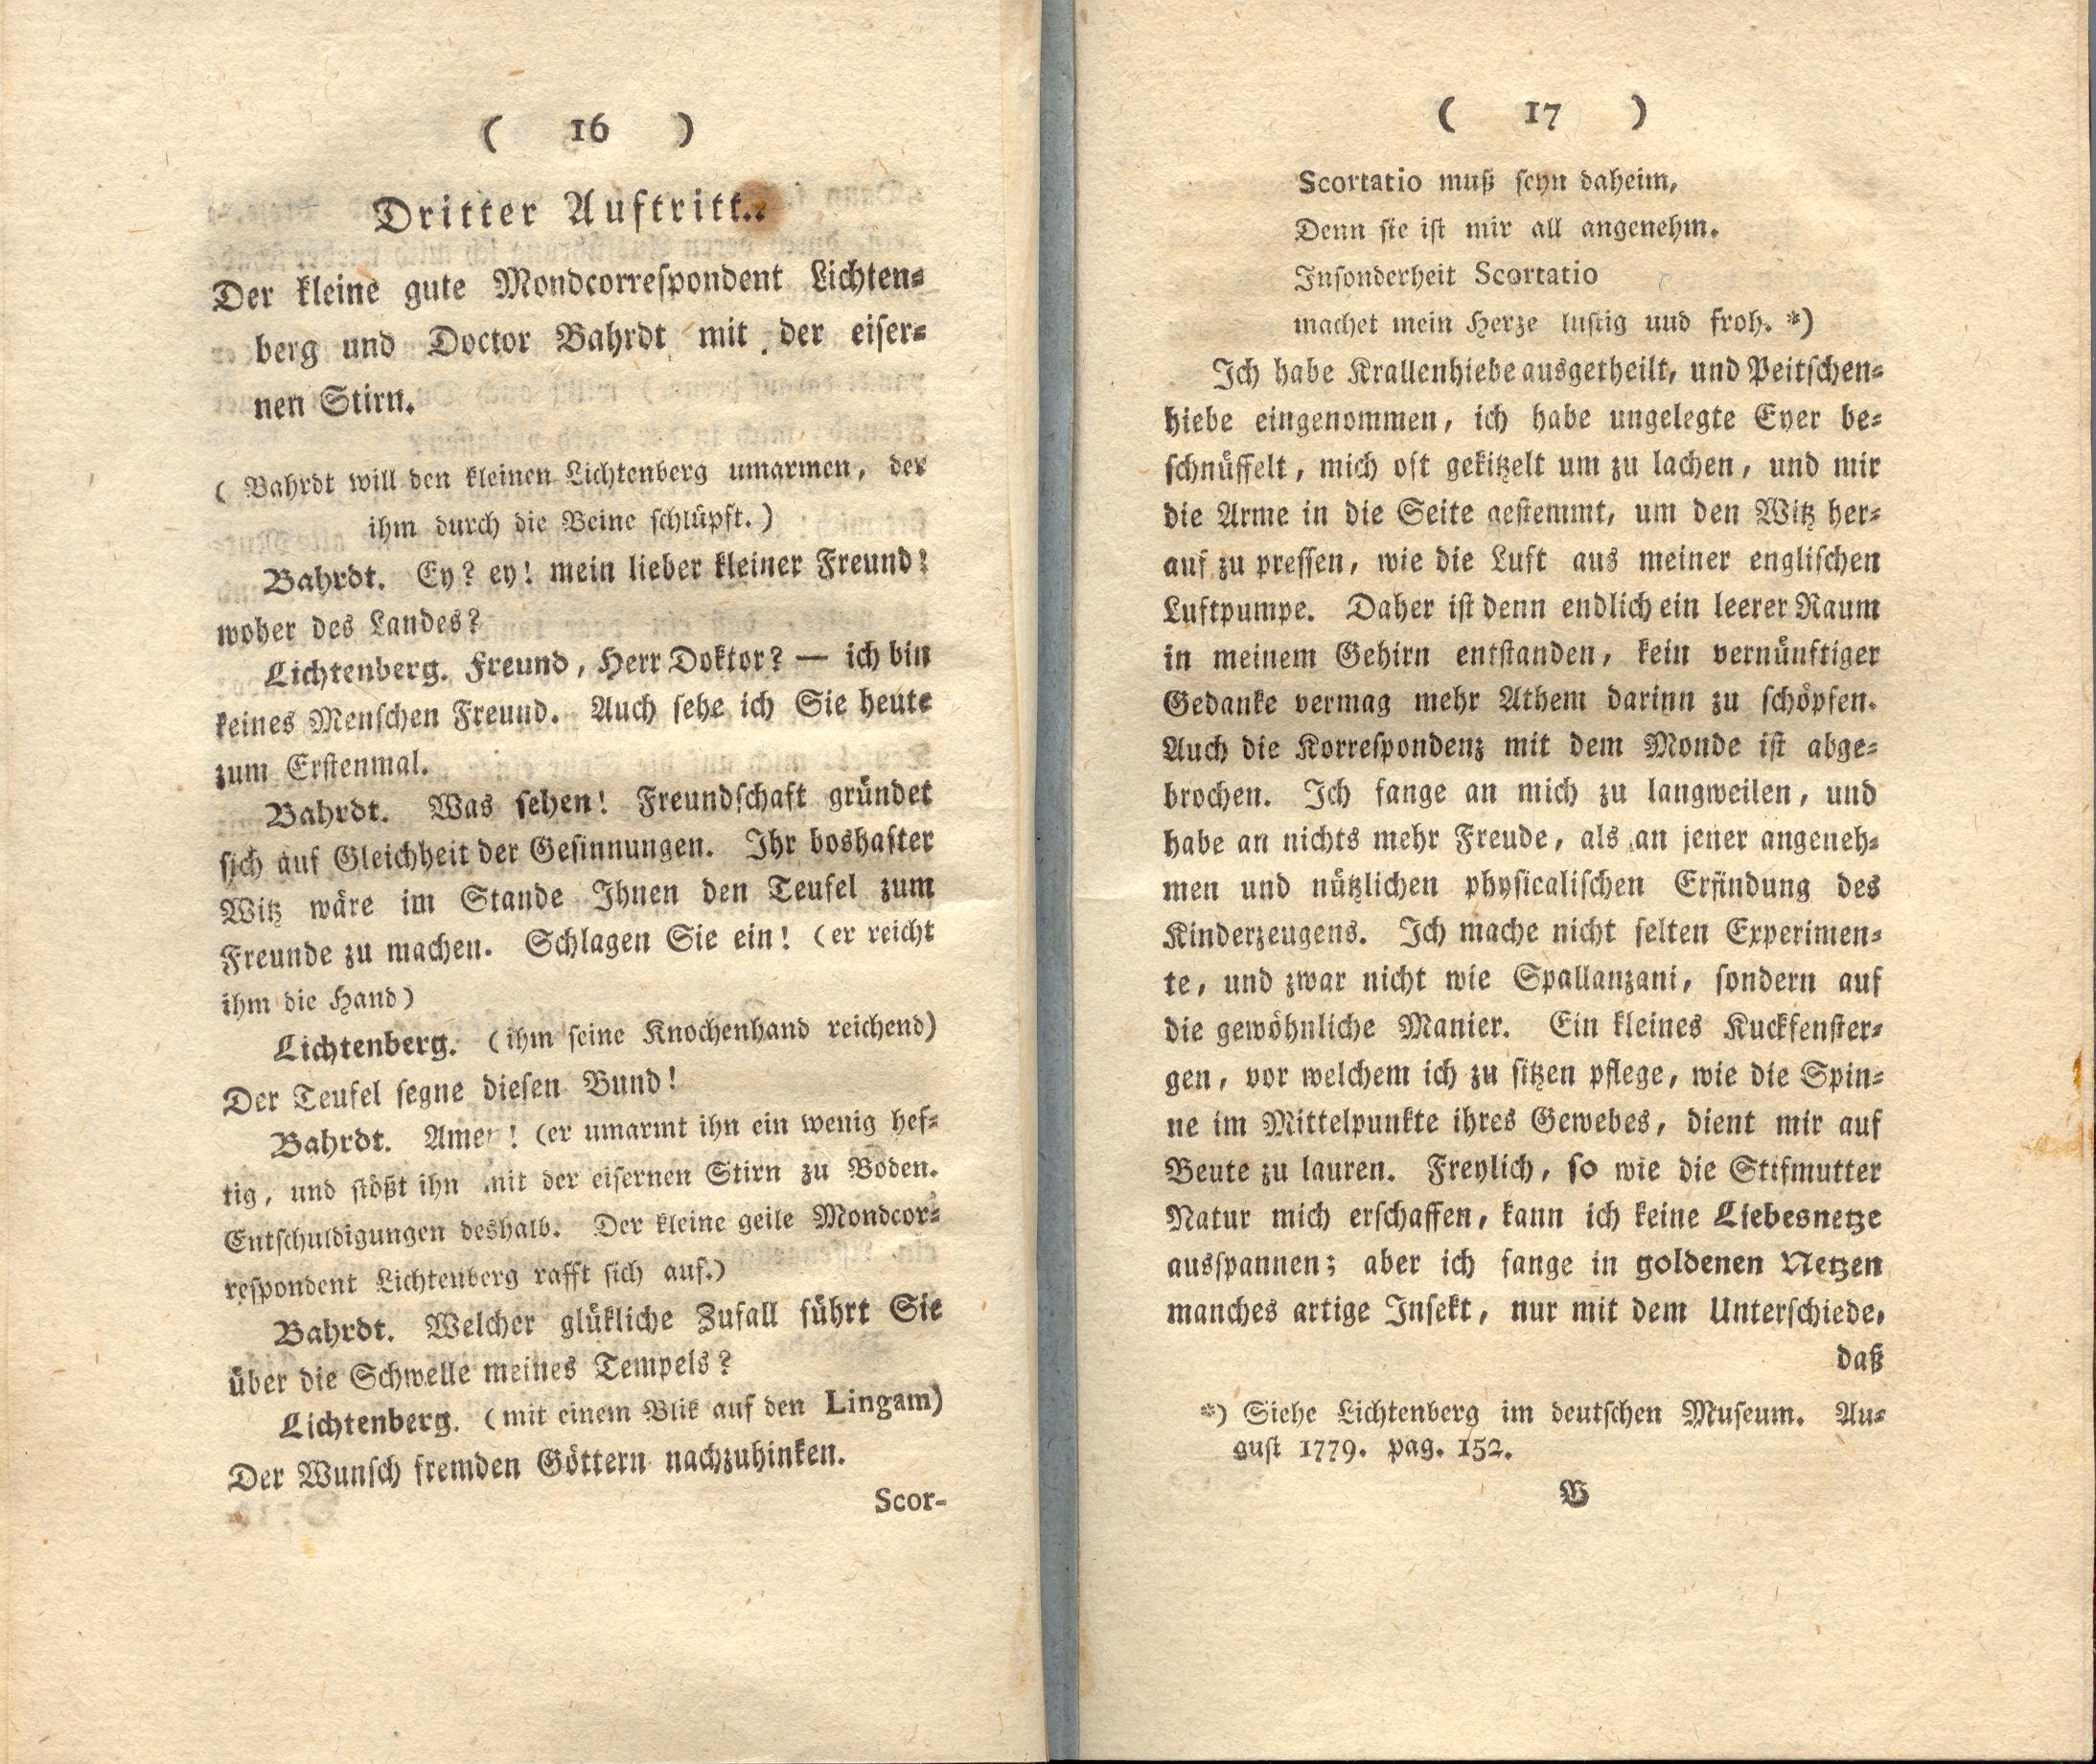 Doctor Bahrdt mit der eisernen Stirn (1790) | 10. (16-17) Main body of text